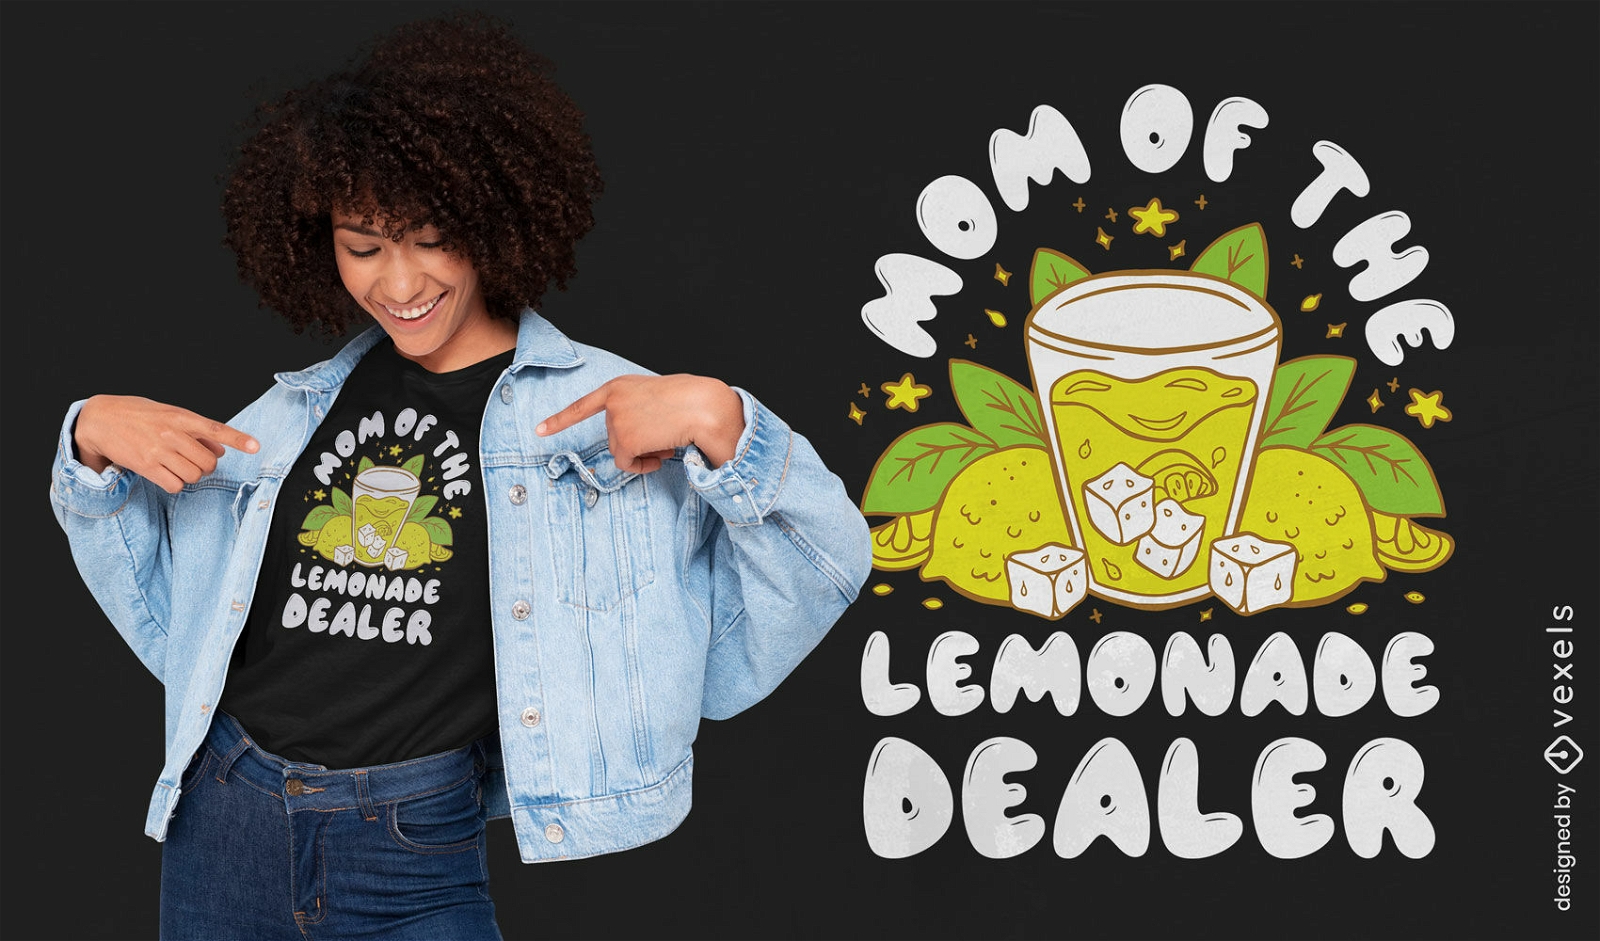 Lemonade dealer t-shirt design